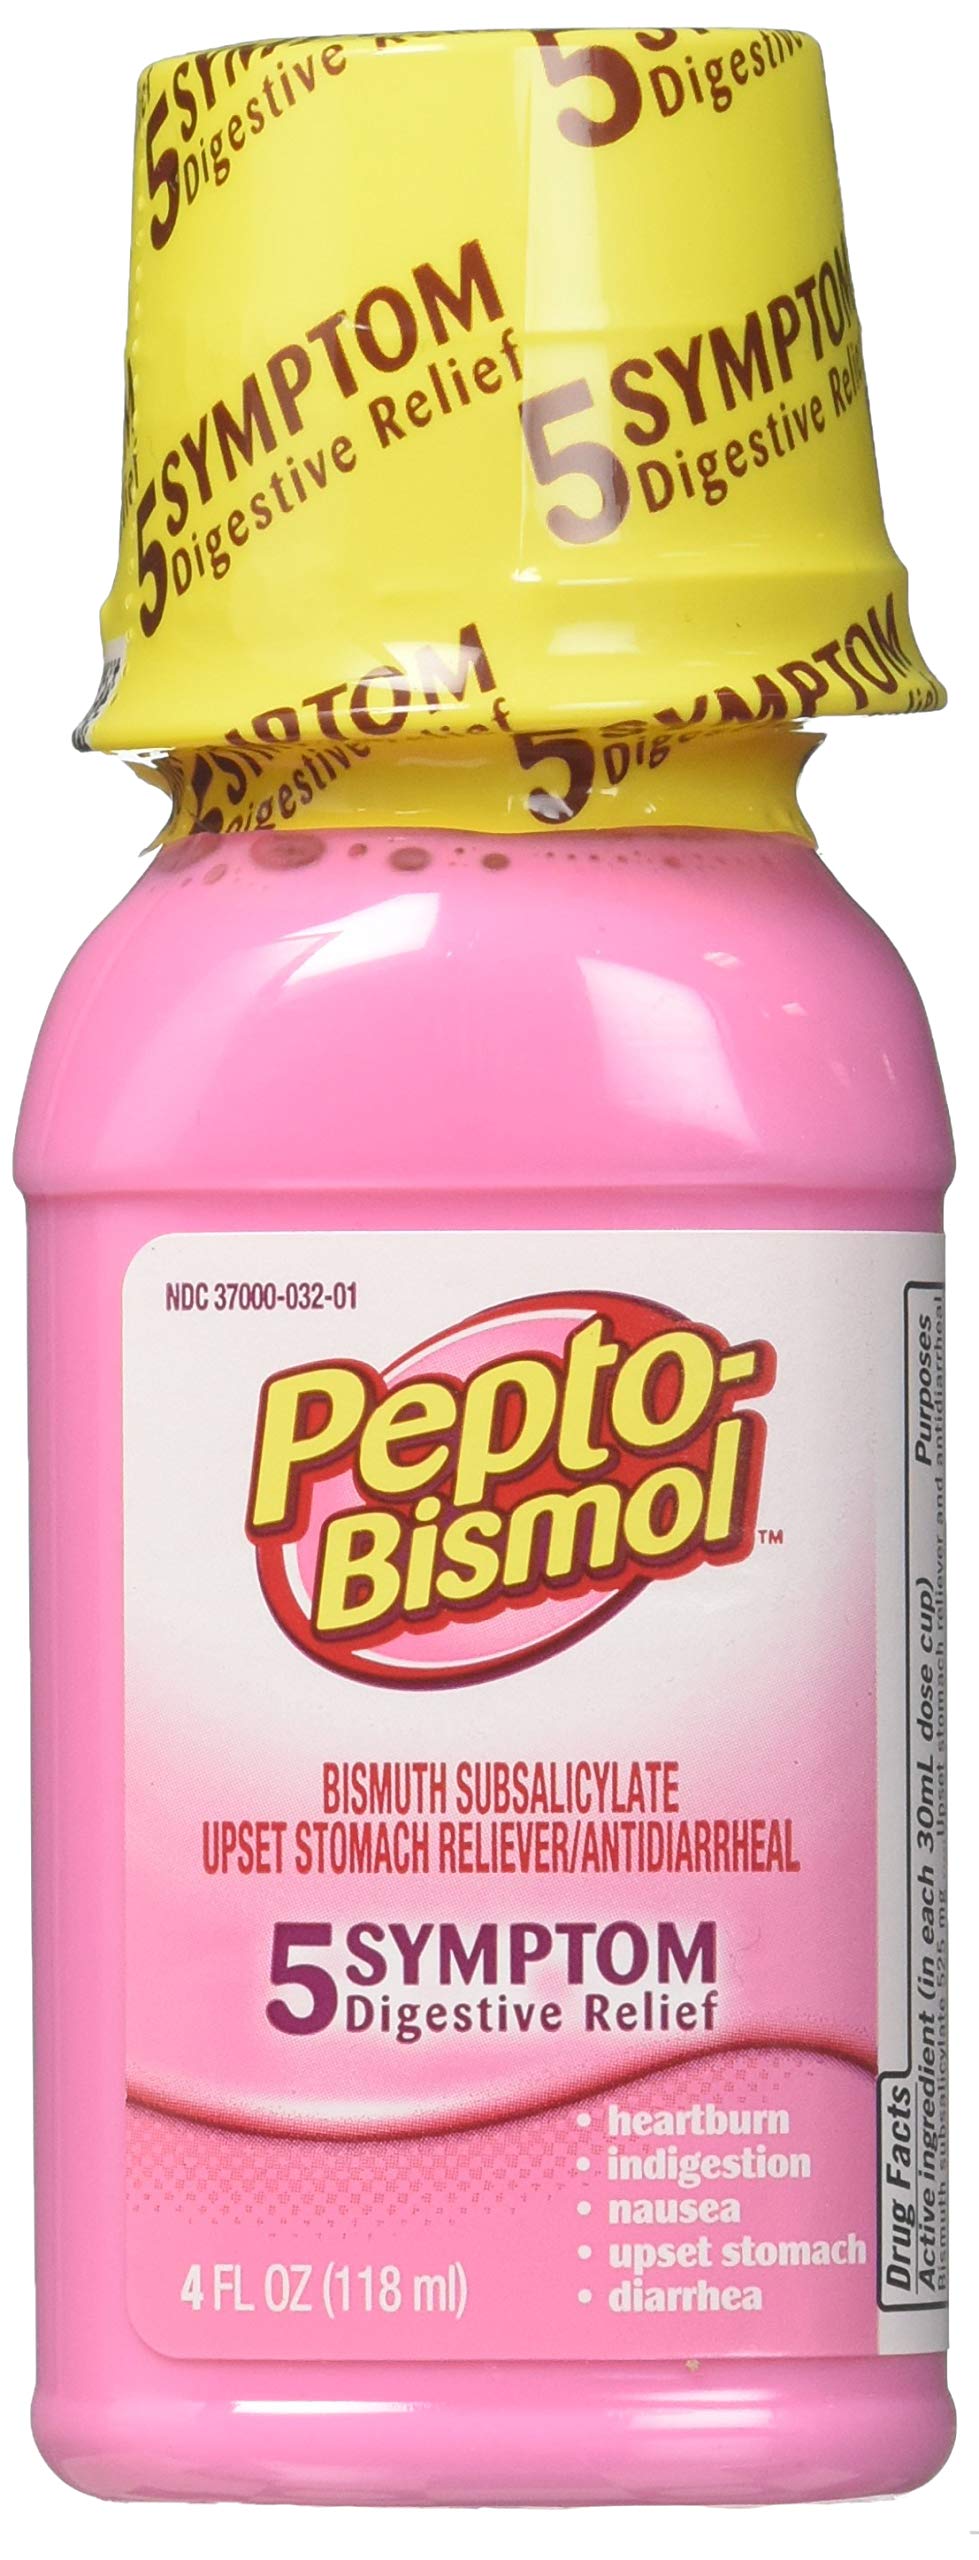 Pepto-Bismol Original Liquid 5 Symptom Digestive Relief, 4 oz (Pack of 6)